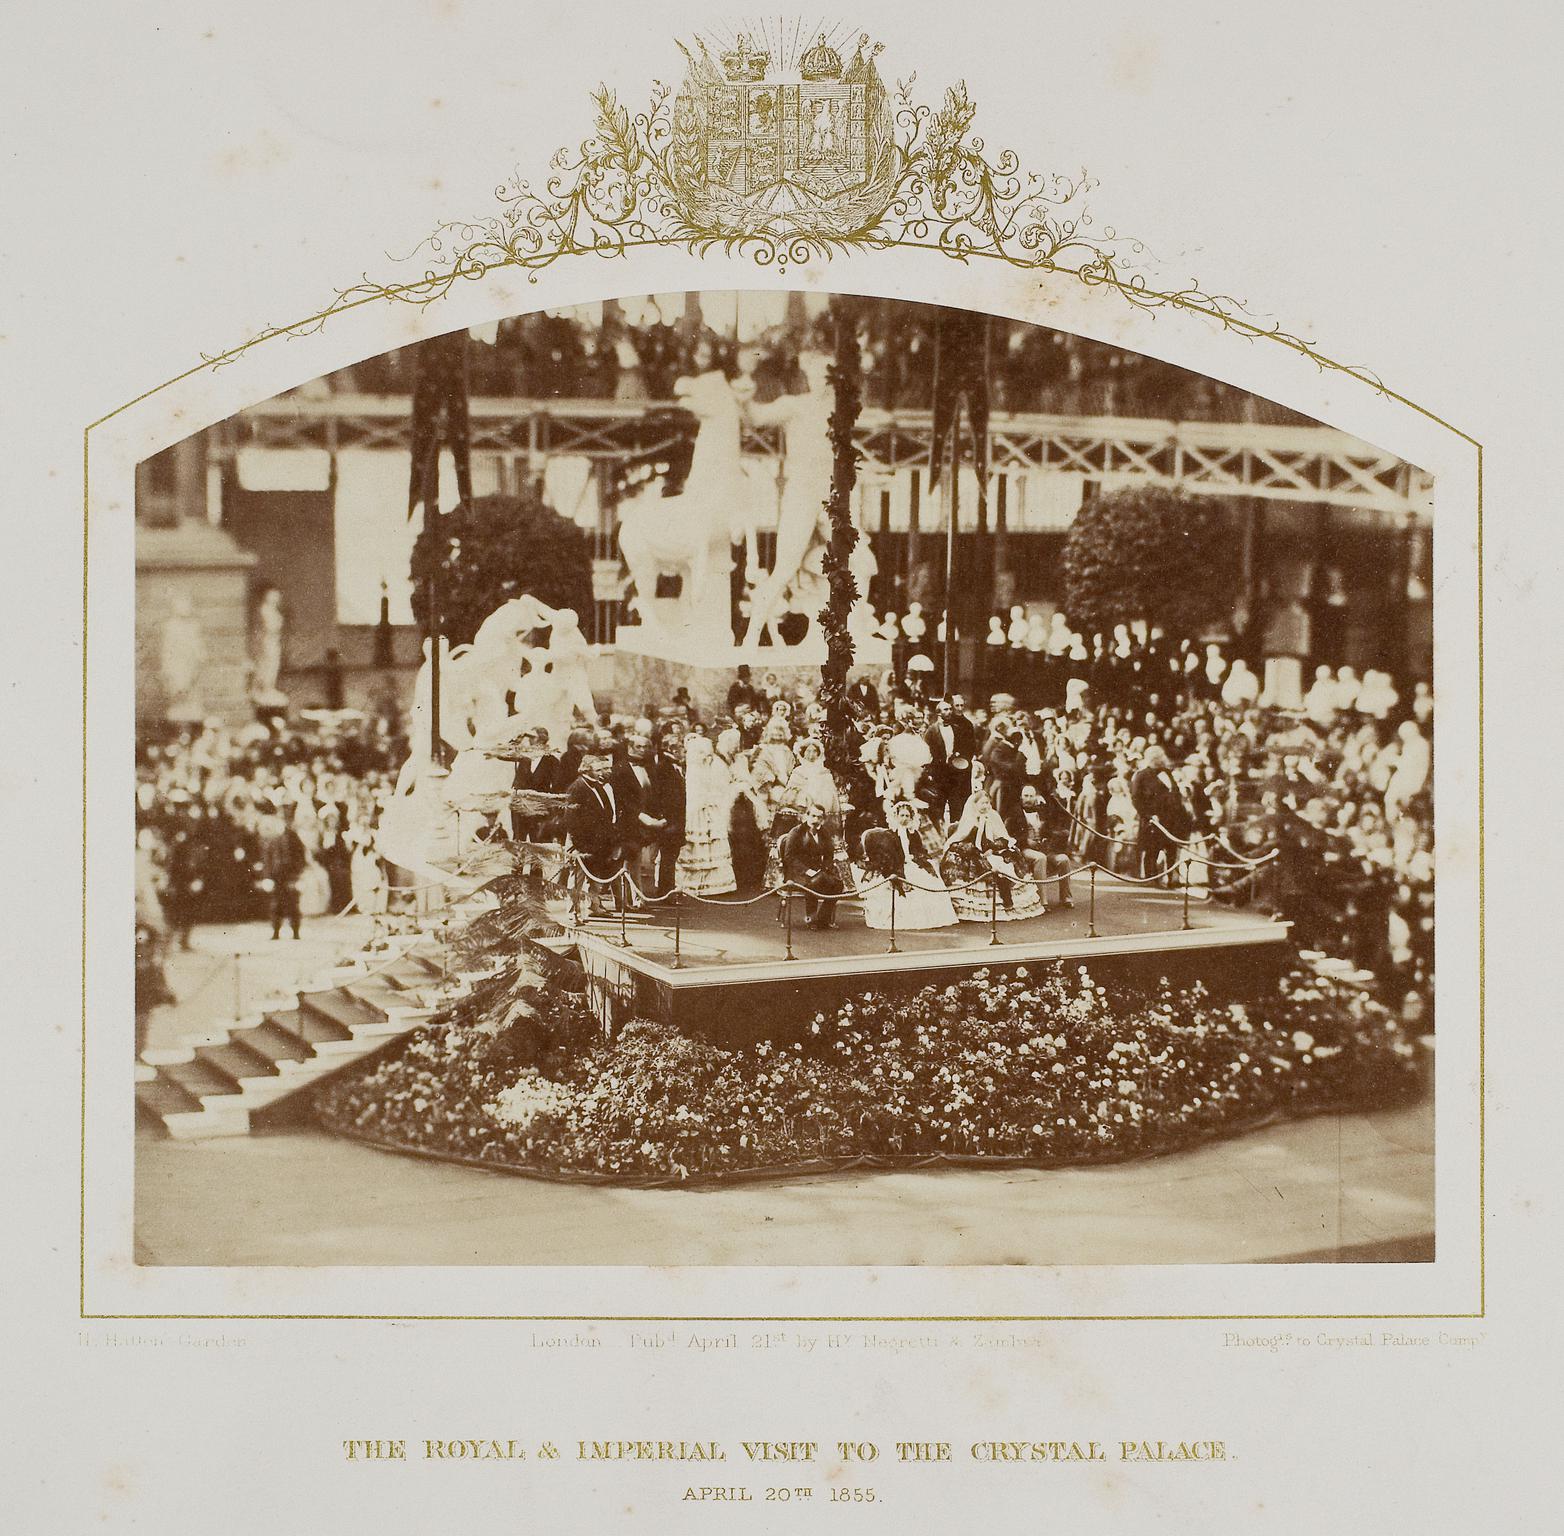 Royal visit to Crystal Palace 1855, photograph